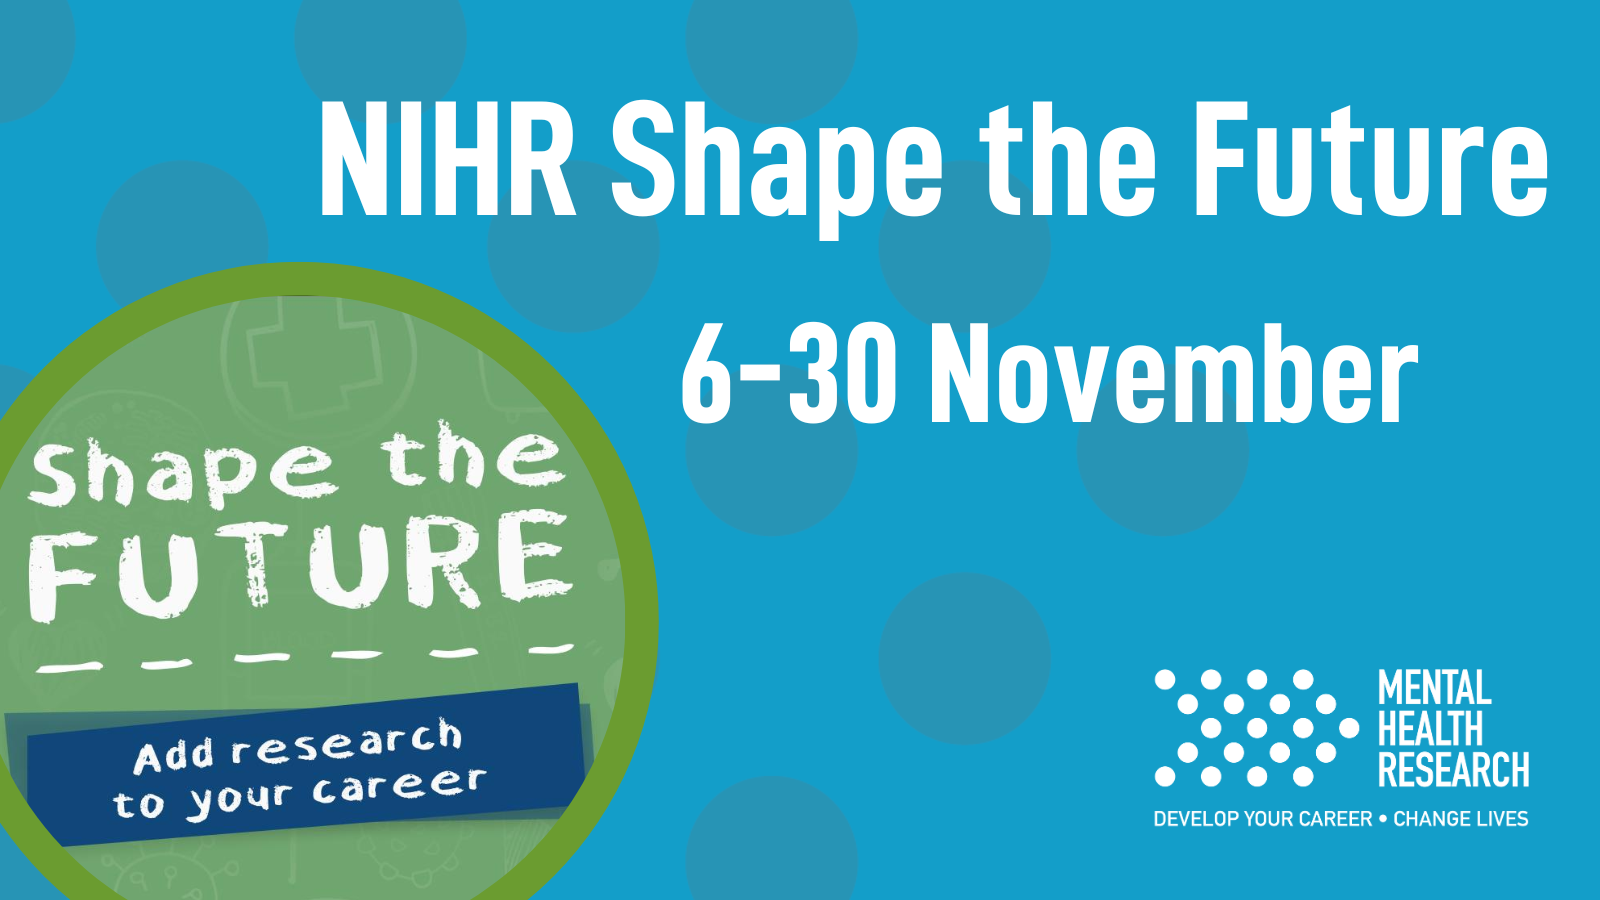 NIHR Shape the Future campaign